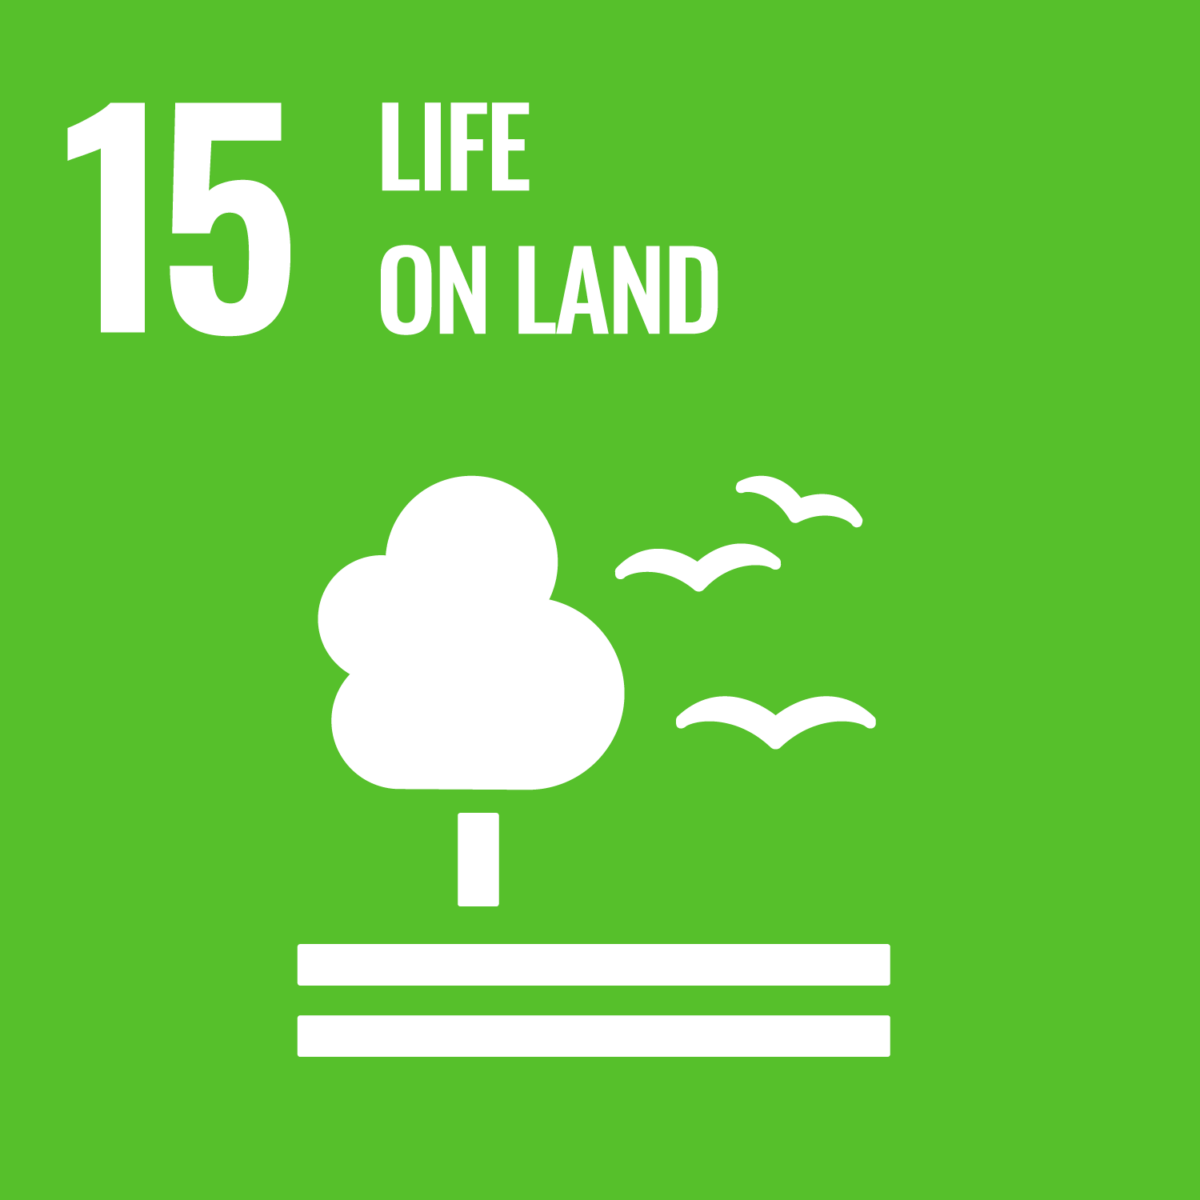 Logotipo del Objetivo de Desarrollo Sostenible 15 de las Naciones Unidas, "La vida en la tierra